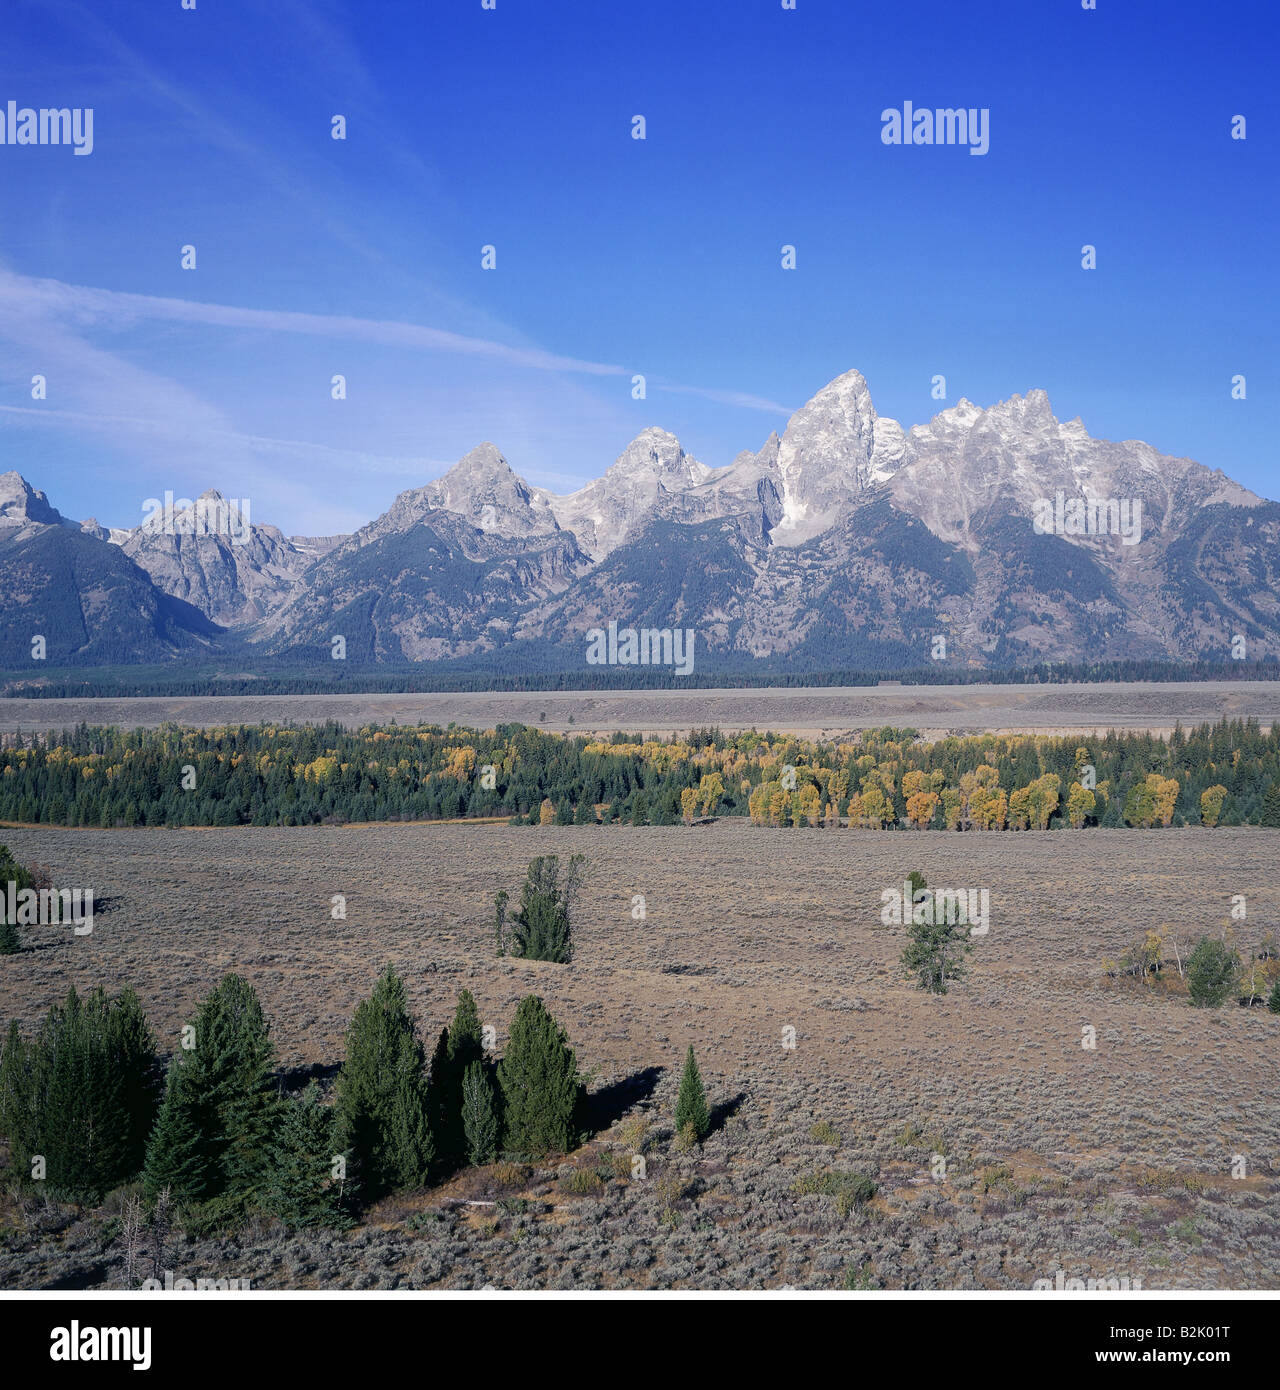 Geographie/Reisen, USA, Wyoming, Landschaften, Grand Teton National Park, Ansicht von Teton Punkt auf der Teton Range mit Grand Teton, Additional-Rights - Clearance-Info - Not-Available Stockfoto